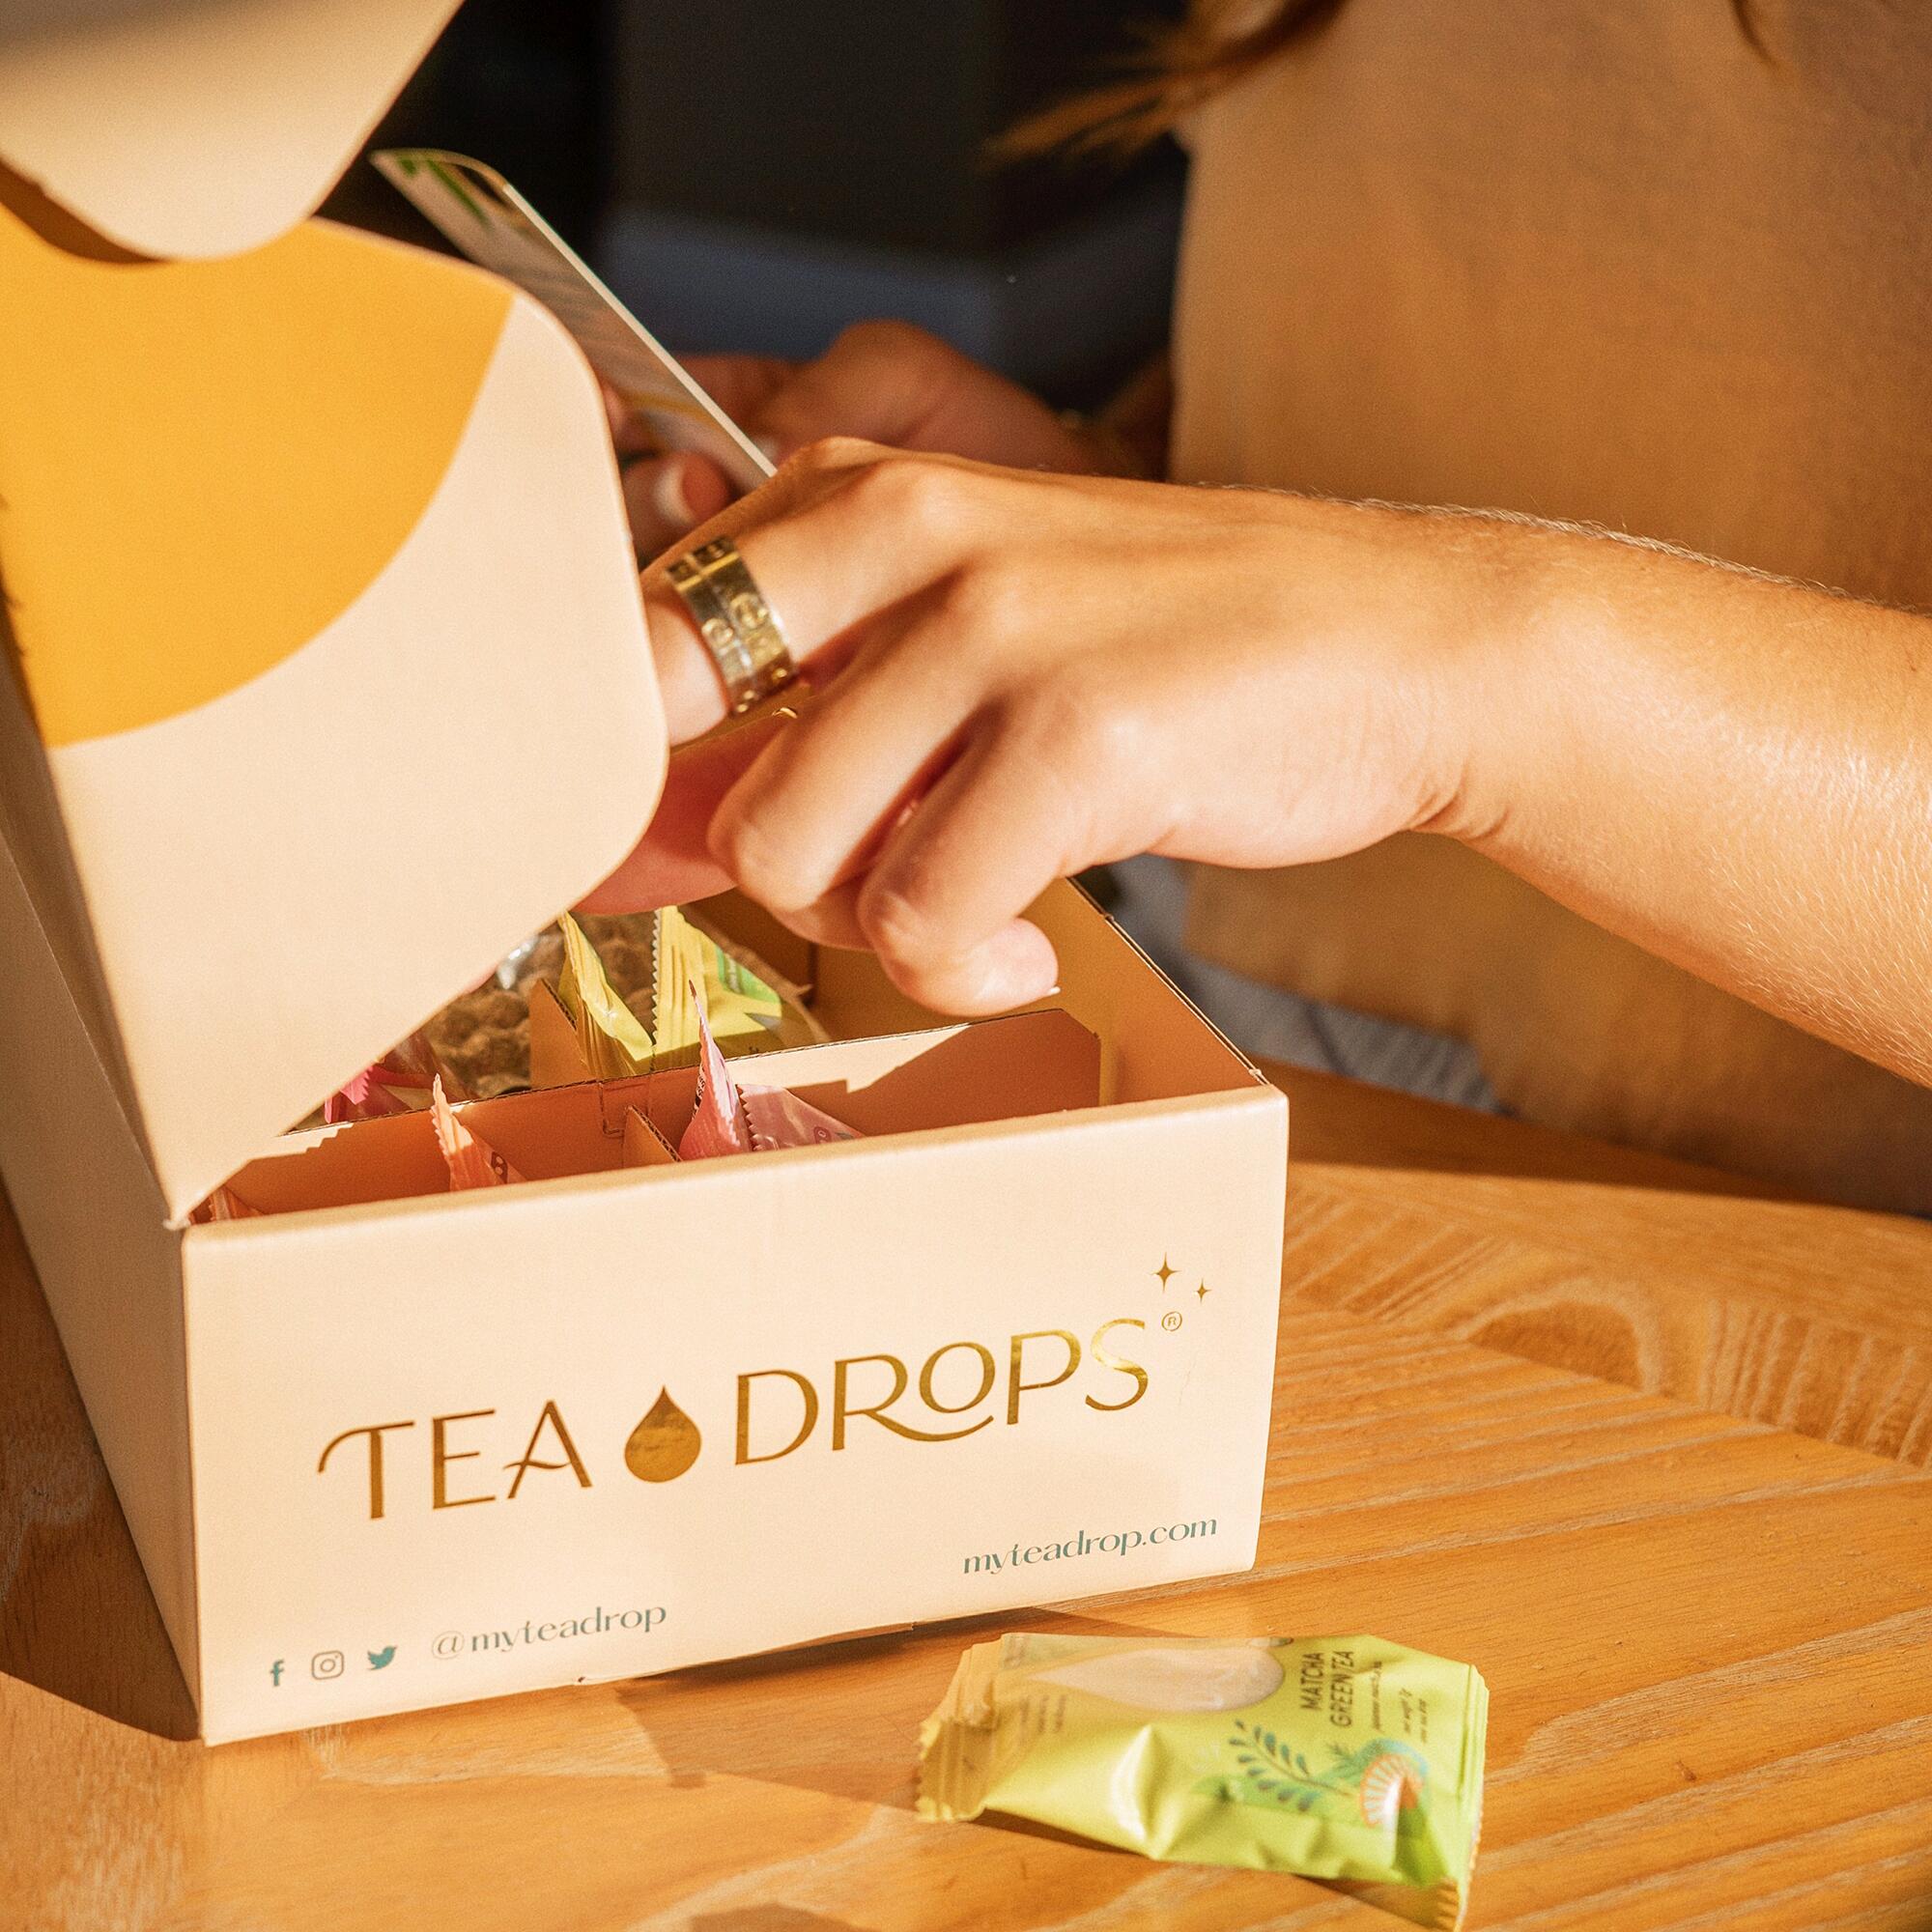 Tea Drops Ultimate sampler kit